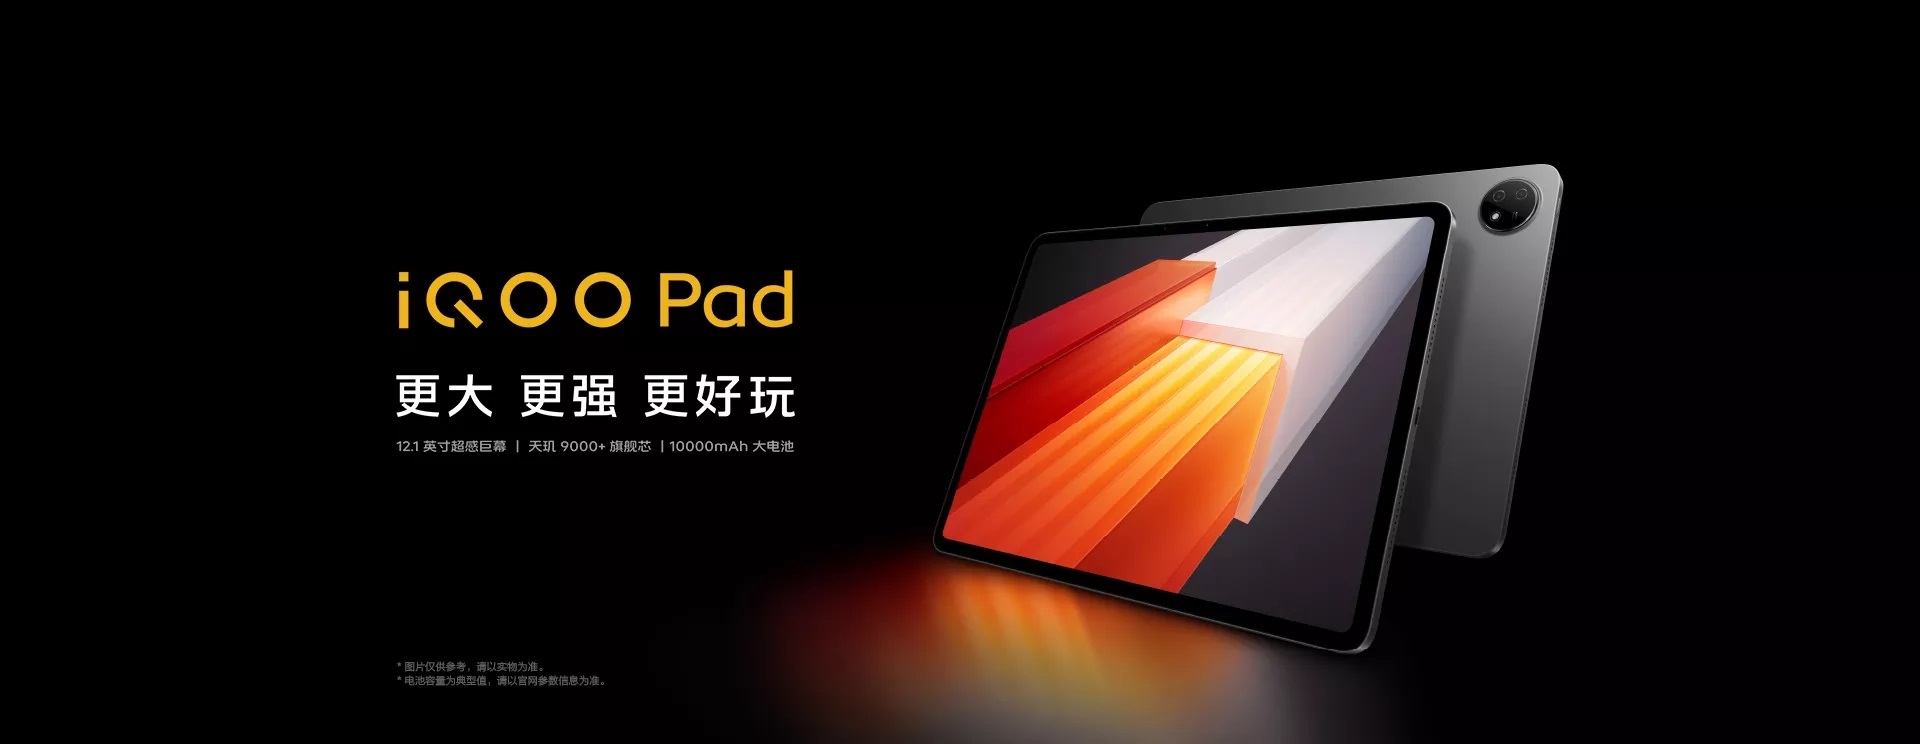 tablet iQOO Pad